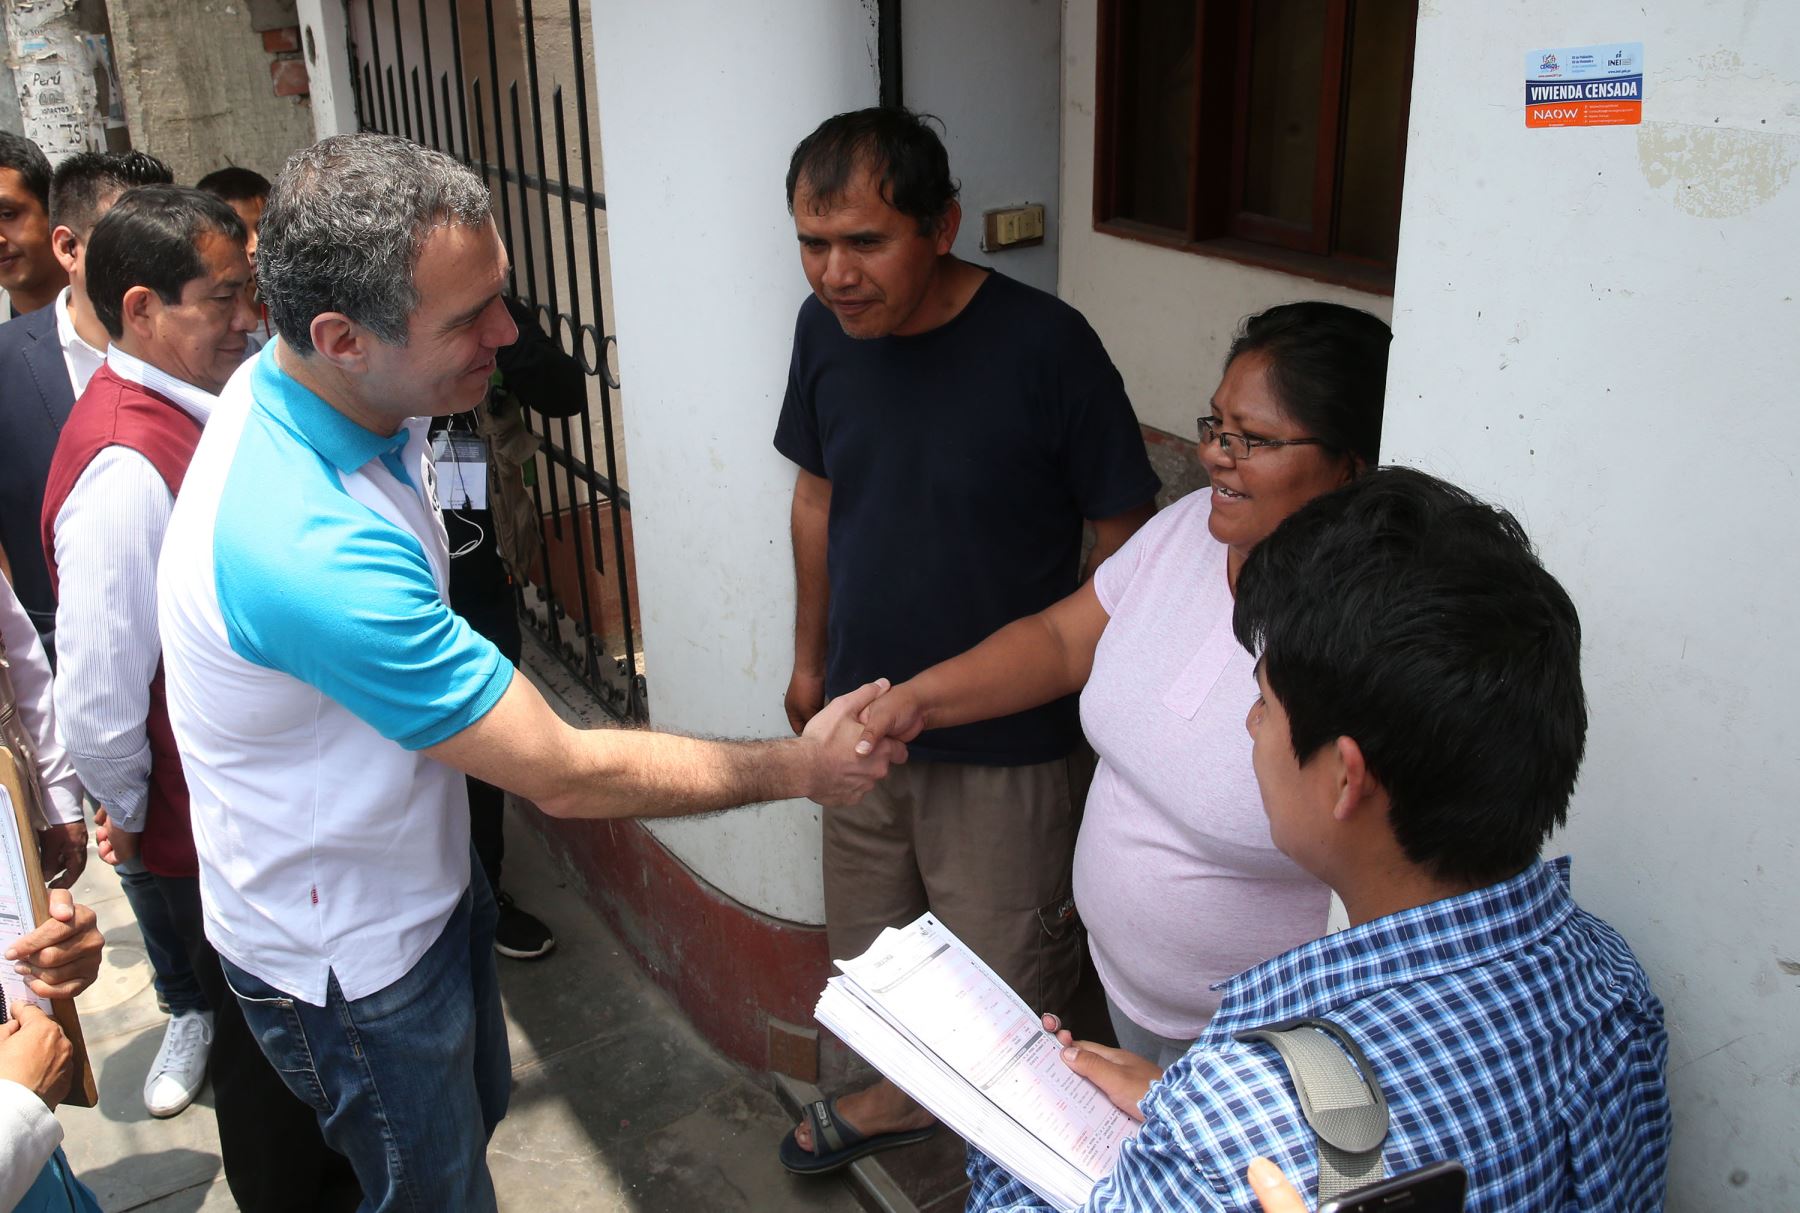 Salvador del Solar Ministro de Cultura supervisa en San Juan de Lurigancho durante el Censo Nacional 2017.Foto: ANDINA/ Vidal Tarqui